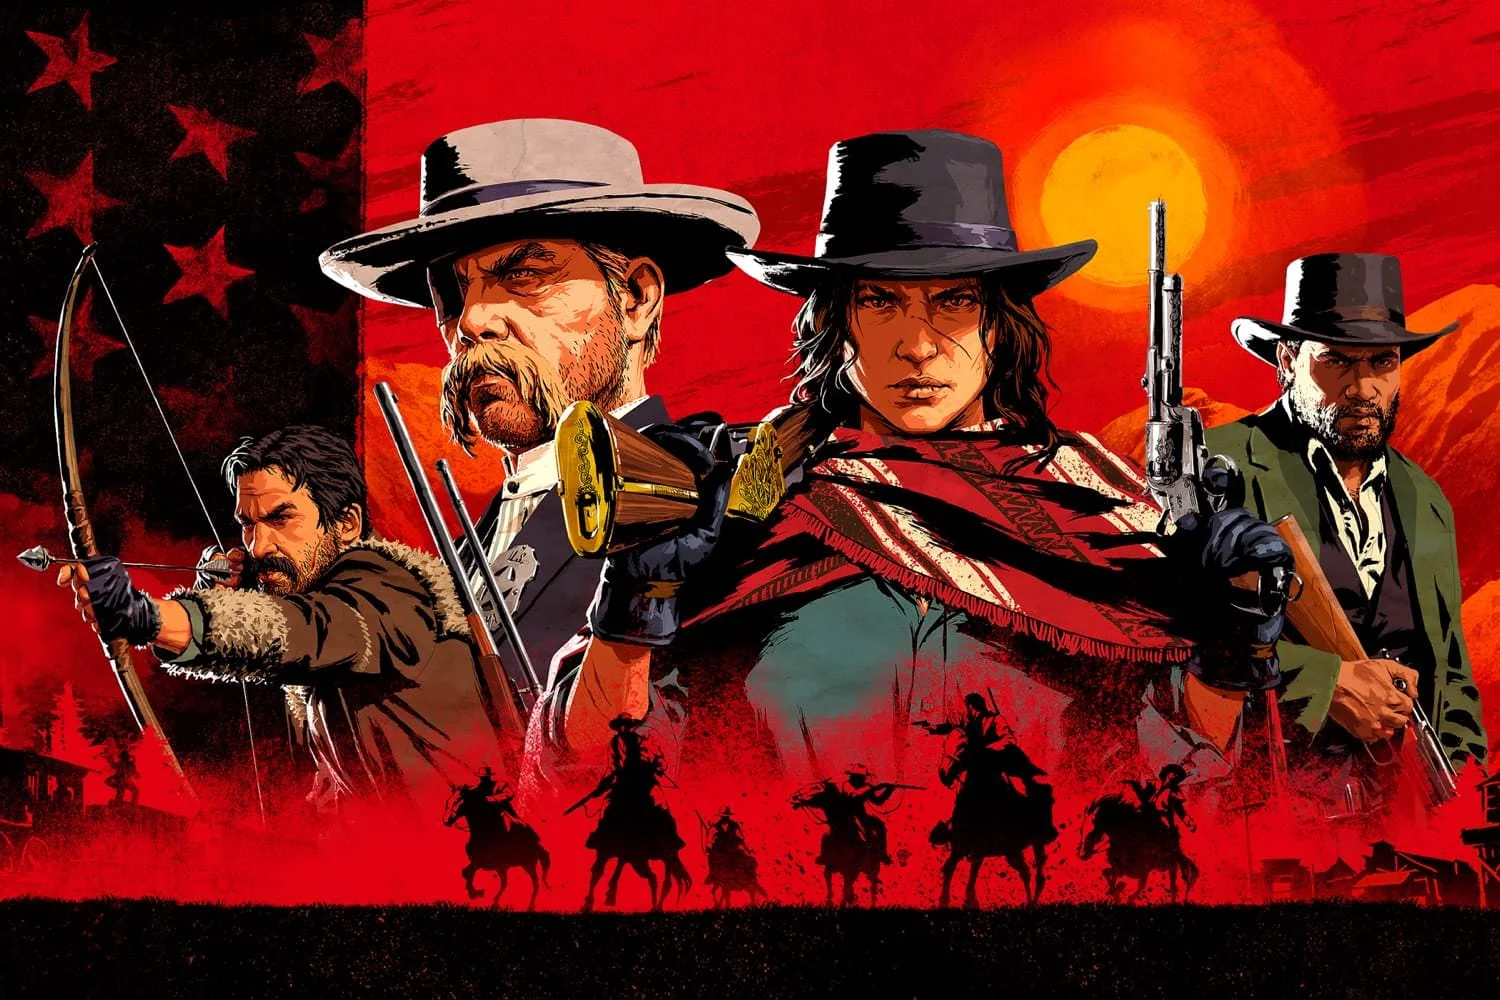 Red Dead Redemption 2 совсем недавно вышла на ПК, а модов по ней уже полно. Здесь мы собрали лучшее, что до сих пор выпустили авторы модификаций. Когда вариантов будет еще больше, обязательно обновим статью!